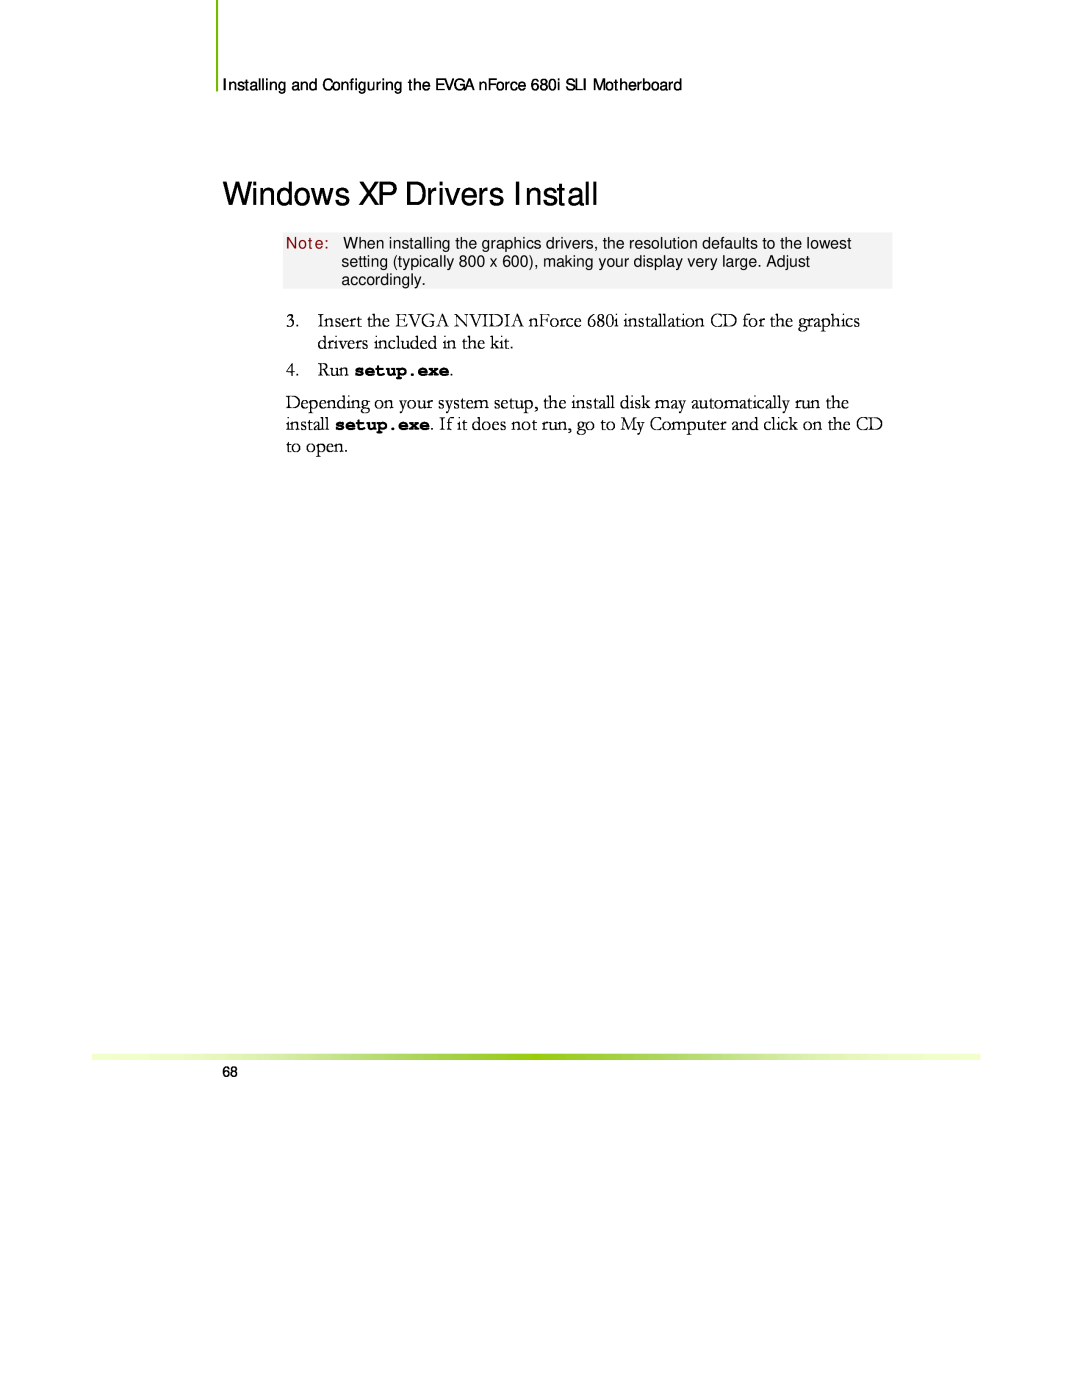 EVGA 122-CK-NF68-XX manual Windows XP Drivers Install, Run setup.exe 